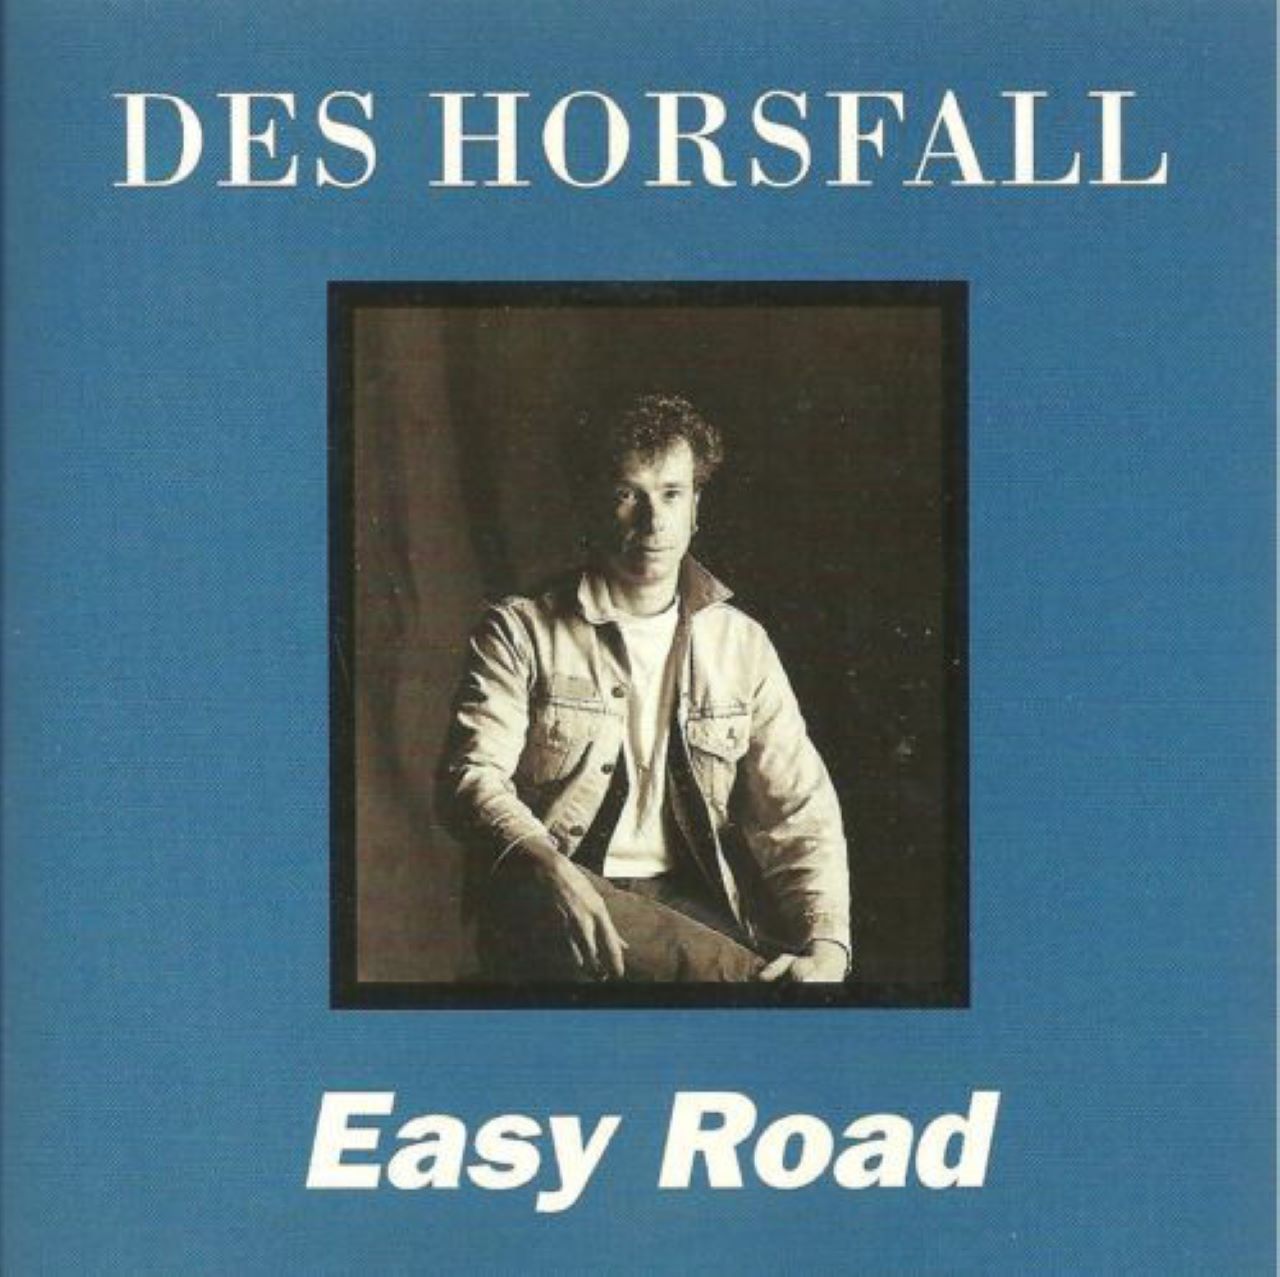 Des Horsfall - Easy Road cover album